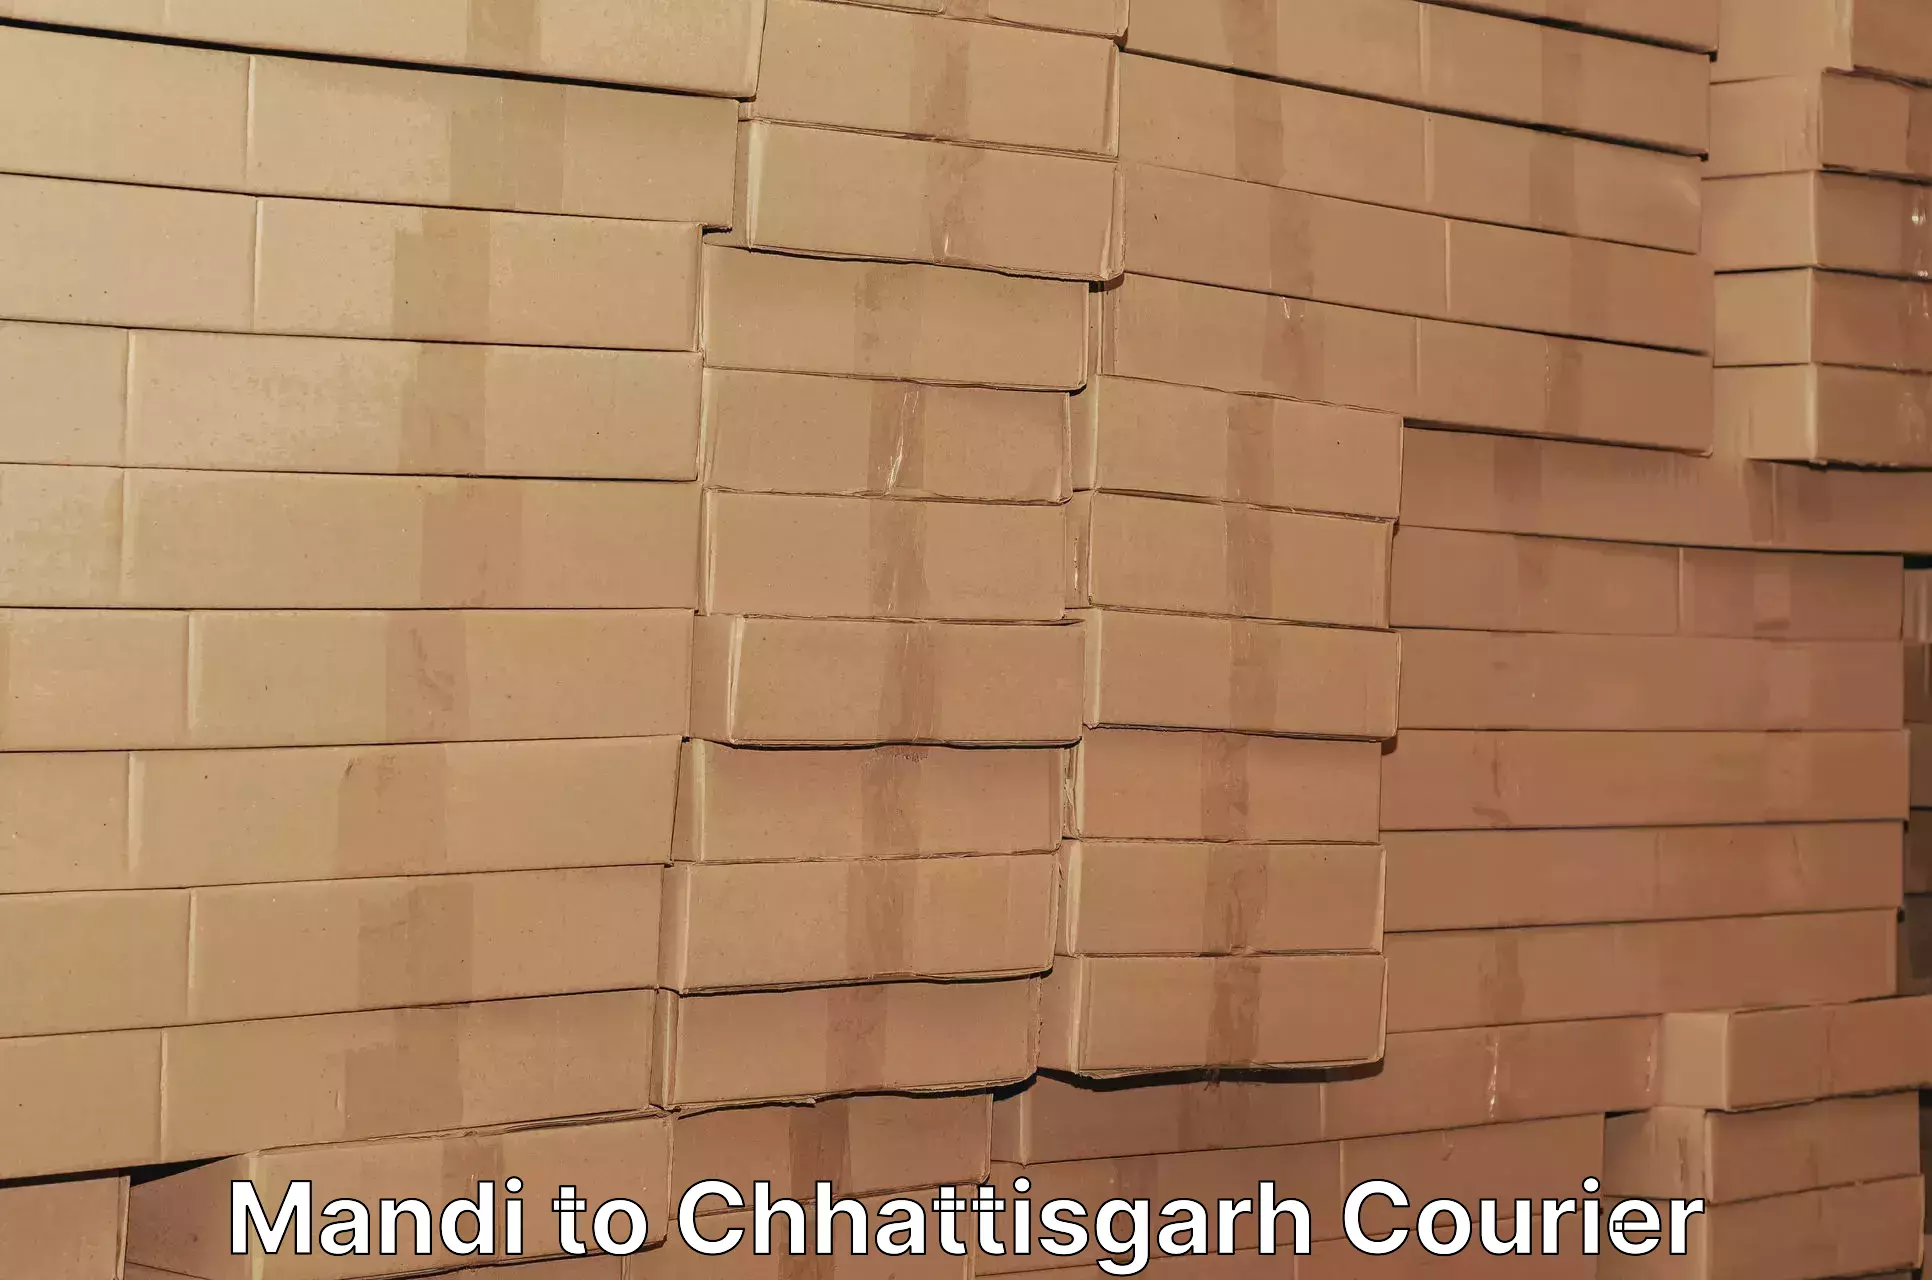 Reliable courier service in Mandi to Raigarh Chhattisgarh